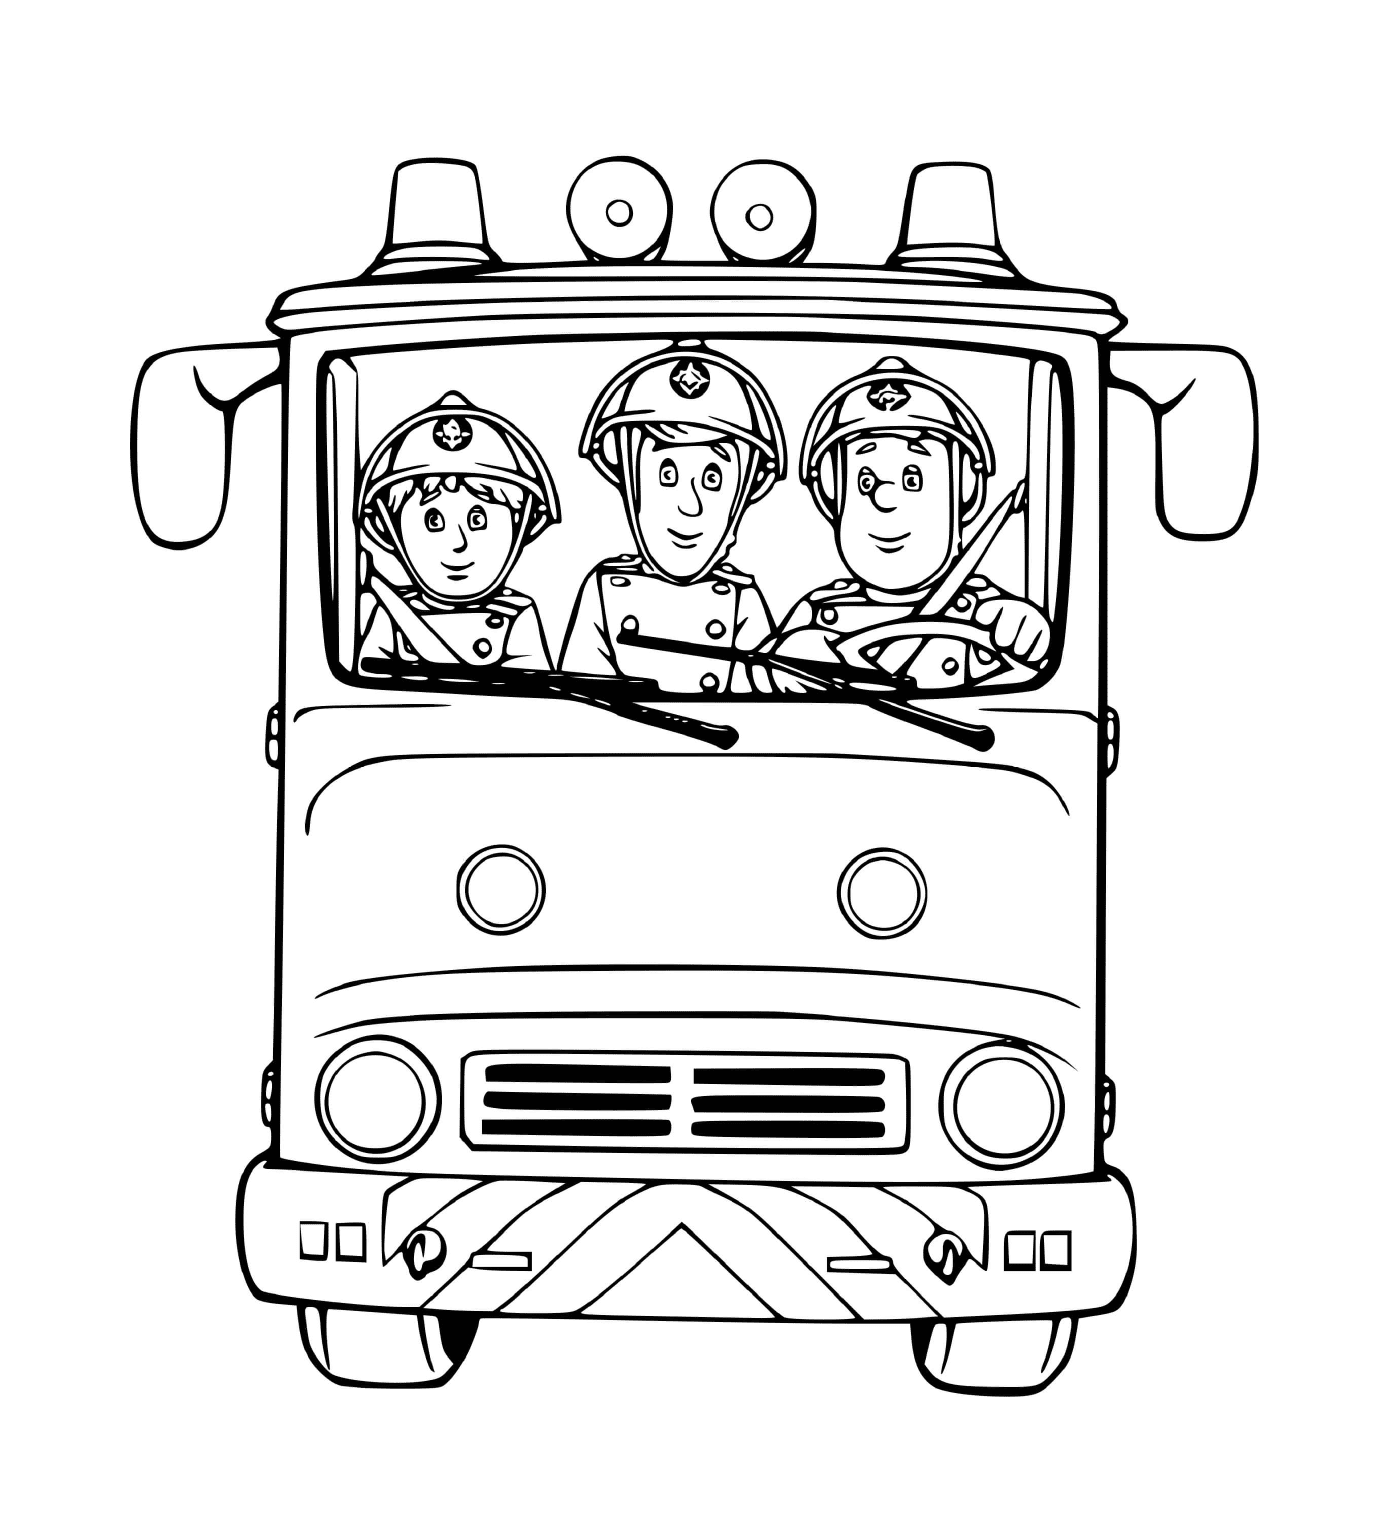  Drei Feuerwehrleute in einem LKW bereit zu handeln 